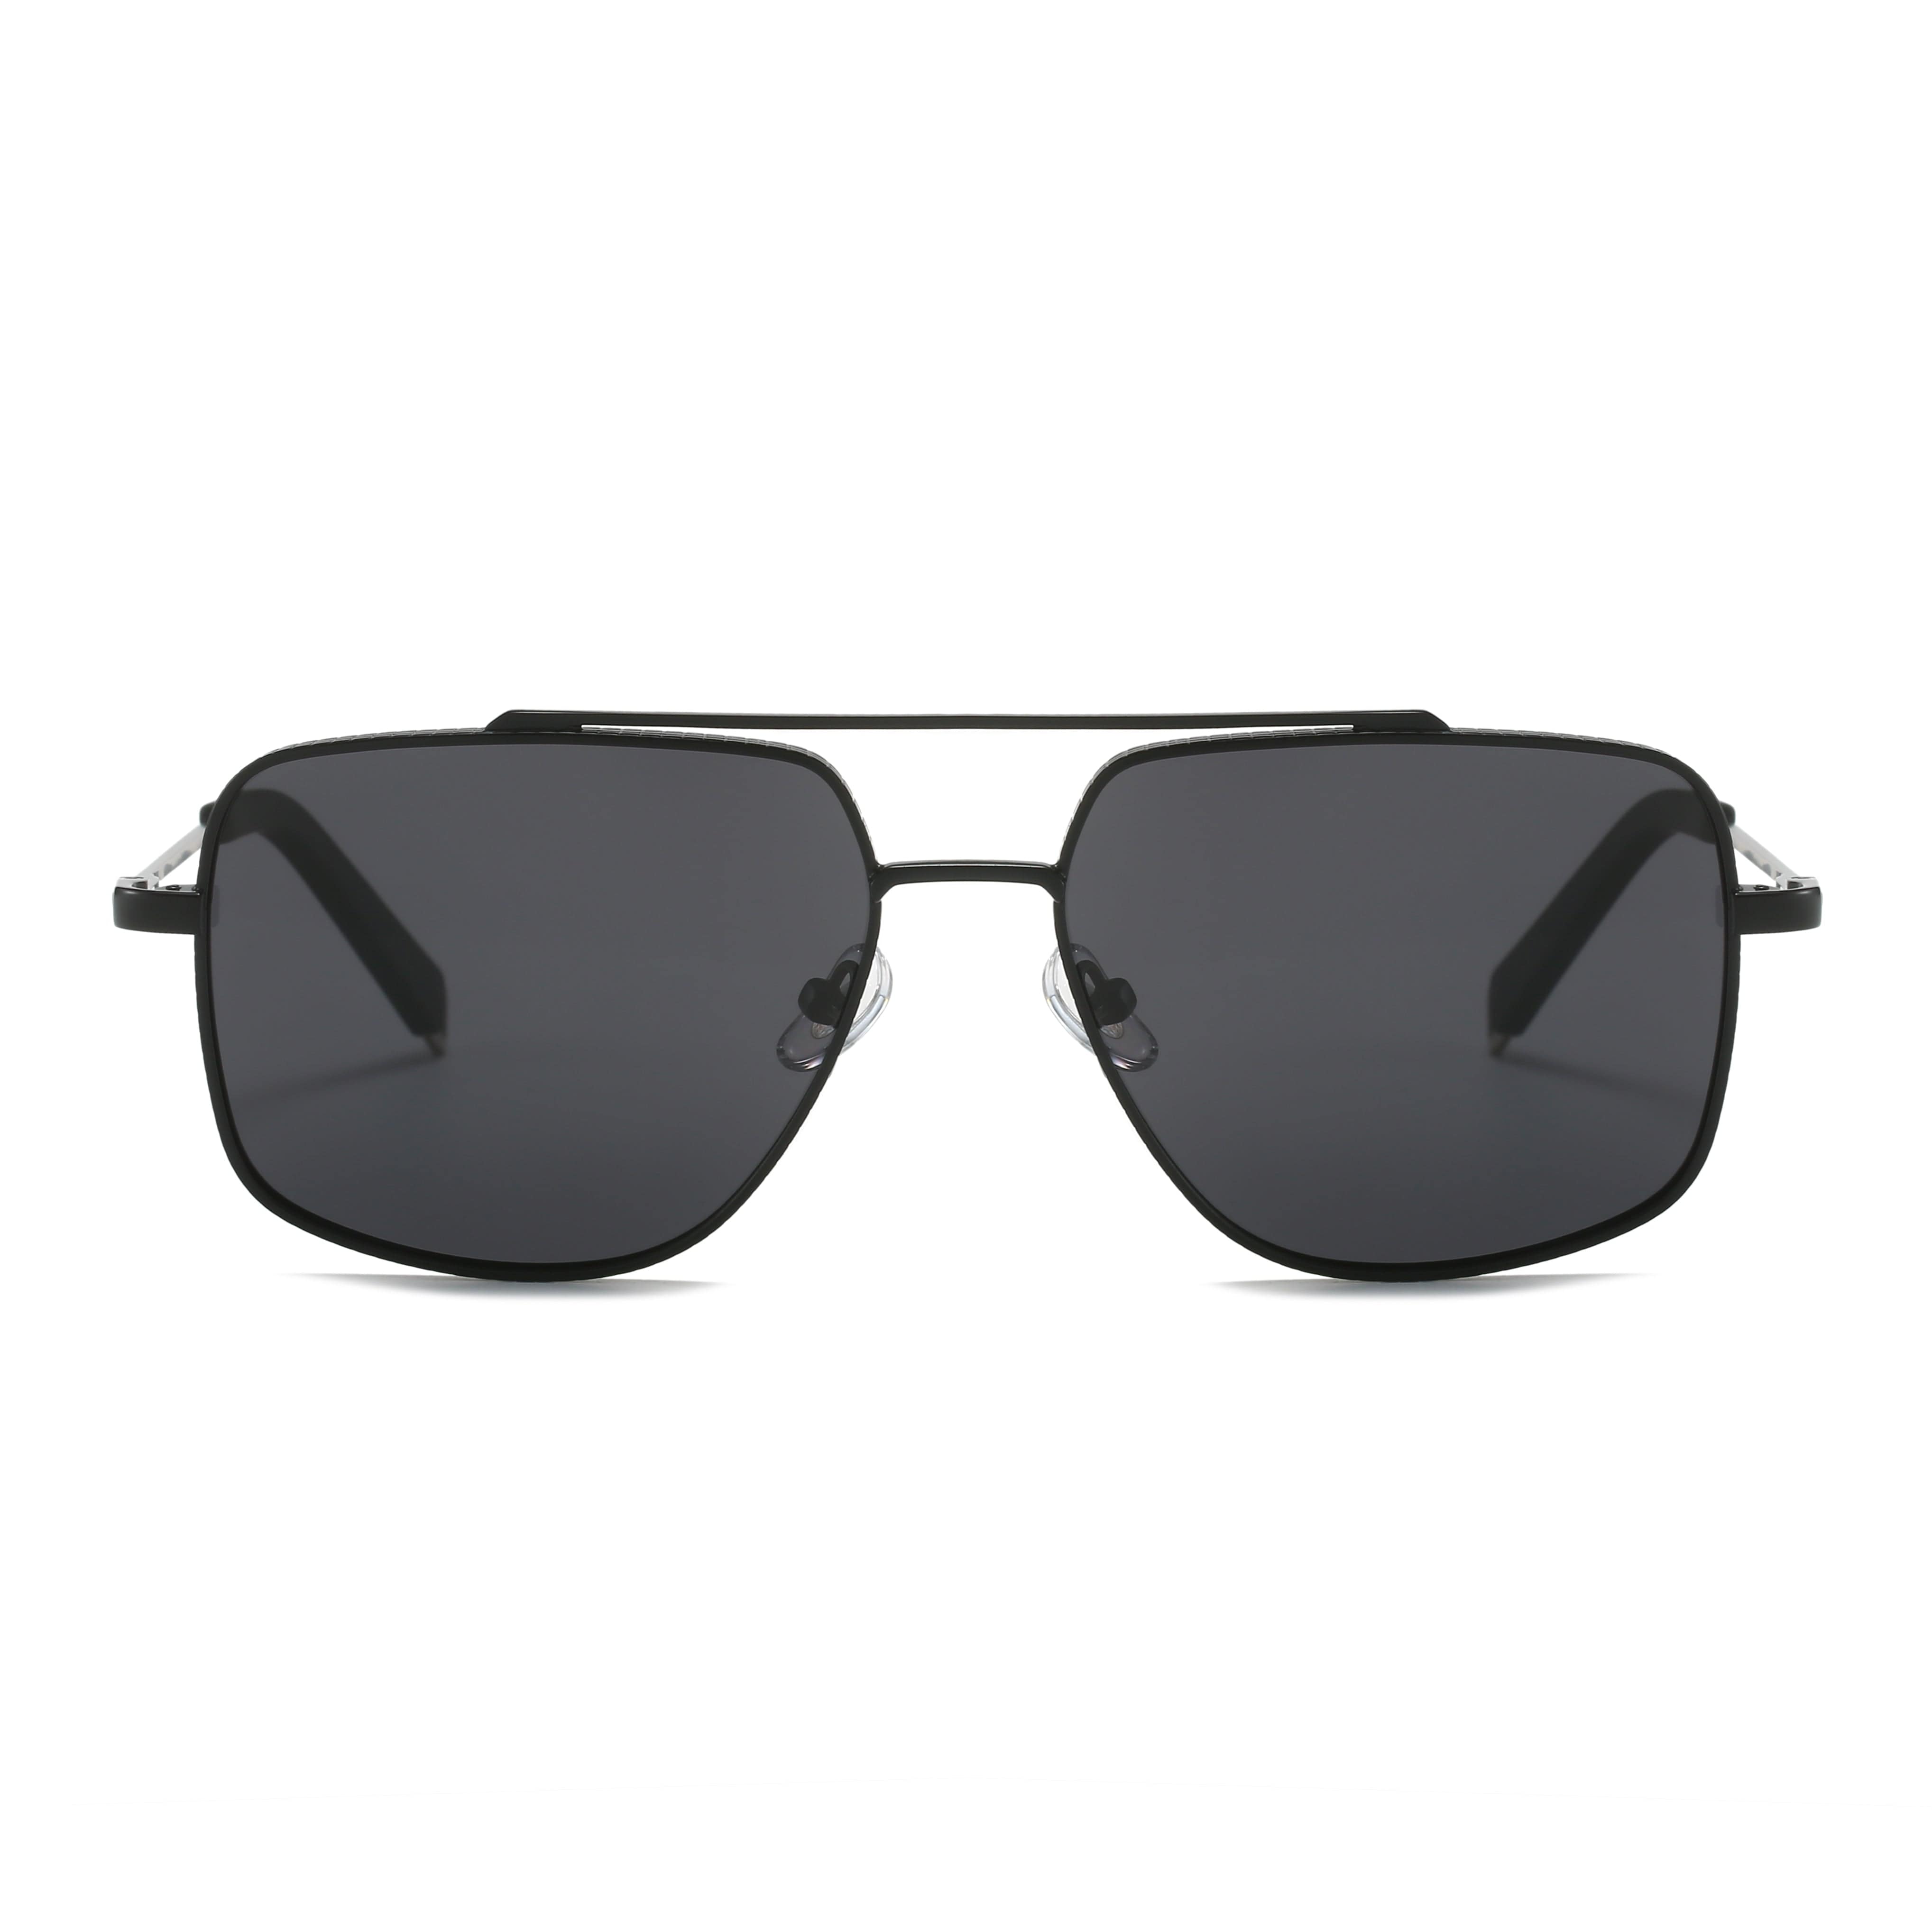 GIUSTIZIERI VECCHI Sunglasses Medium / Black Blaze Shield Uno